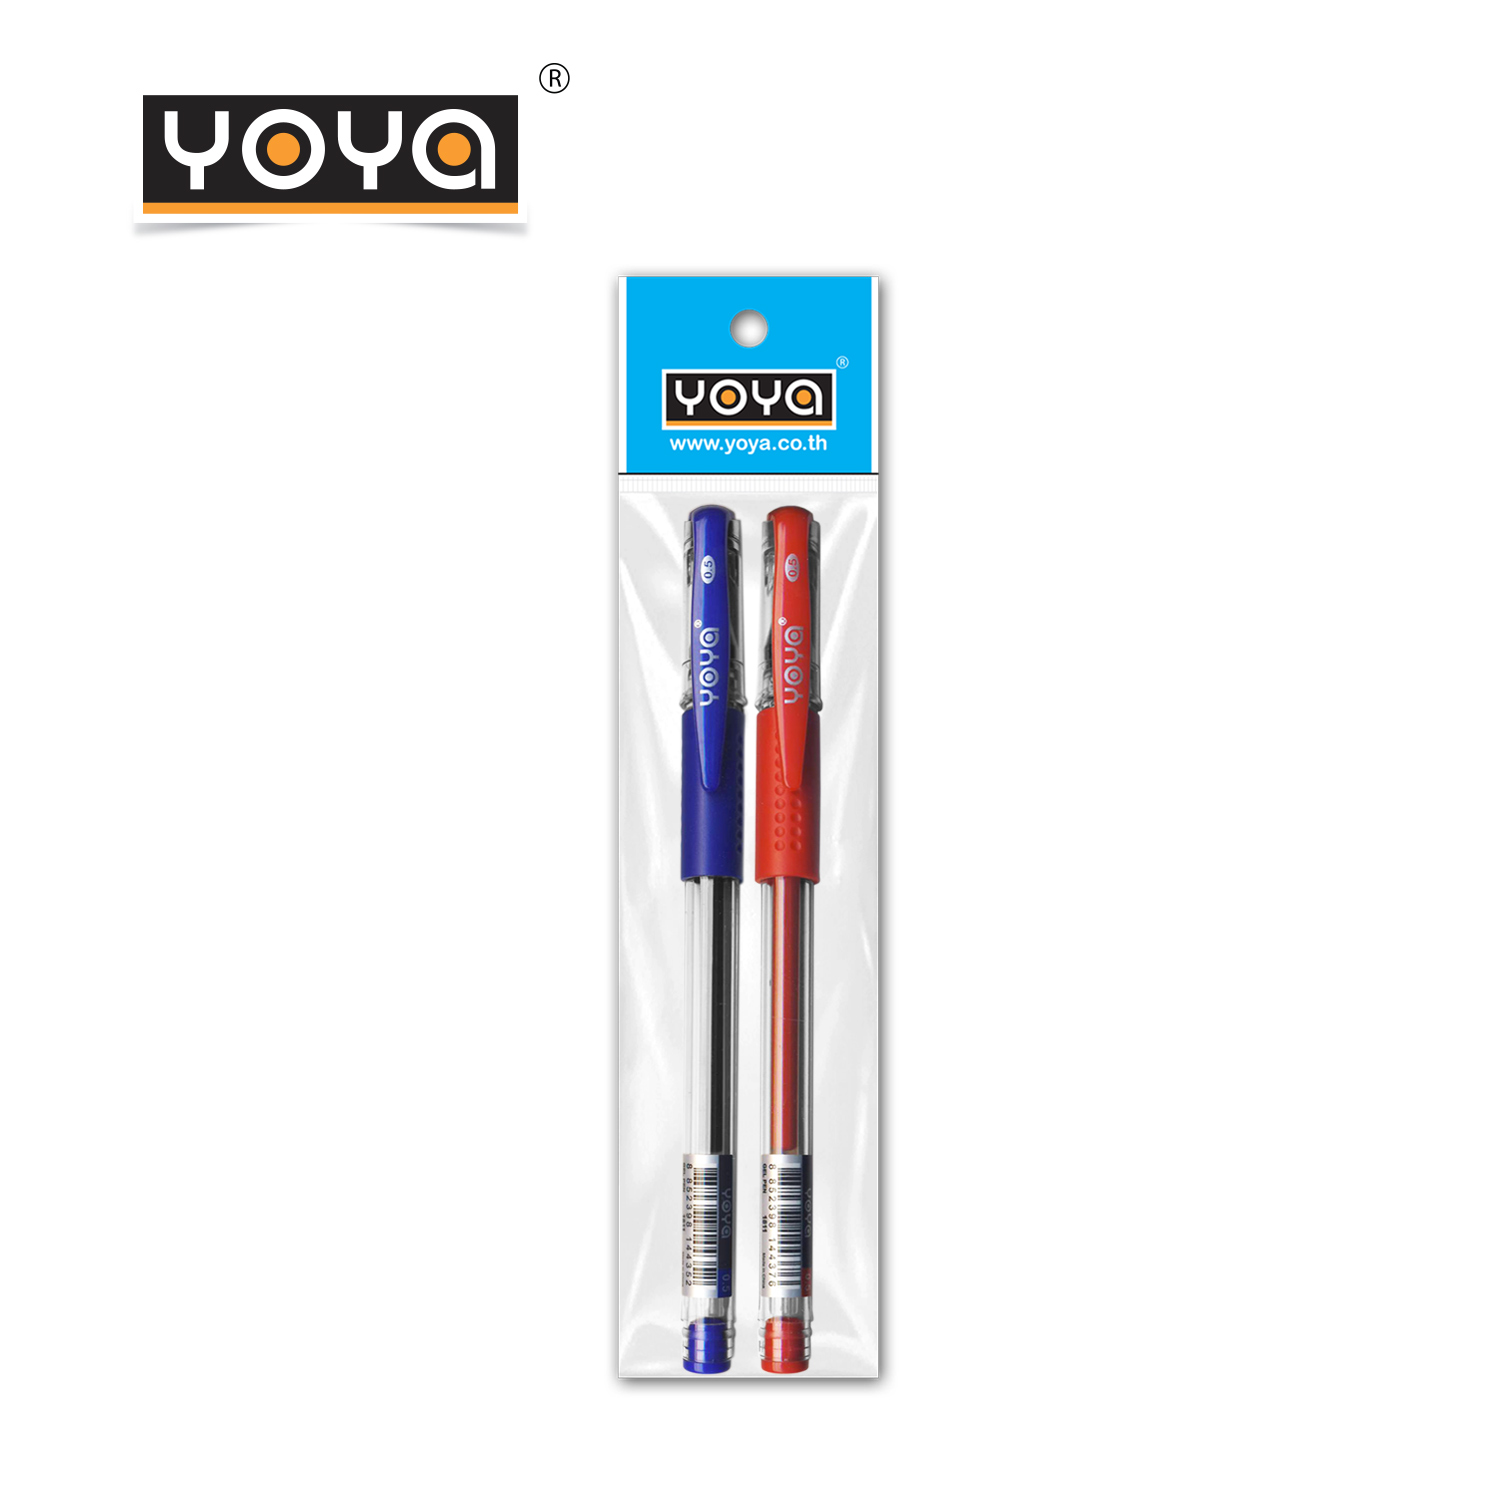 YOYA ปากกาเจล-หัวเข็ม 0.5 มม. แพ็ค 2 รุ่น 1811 / หมึกน้ำเงิน-แดง